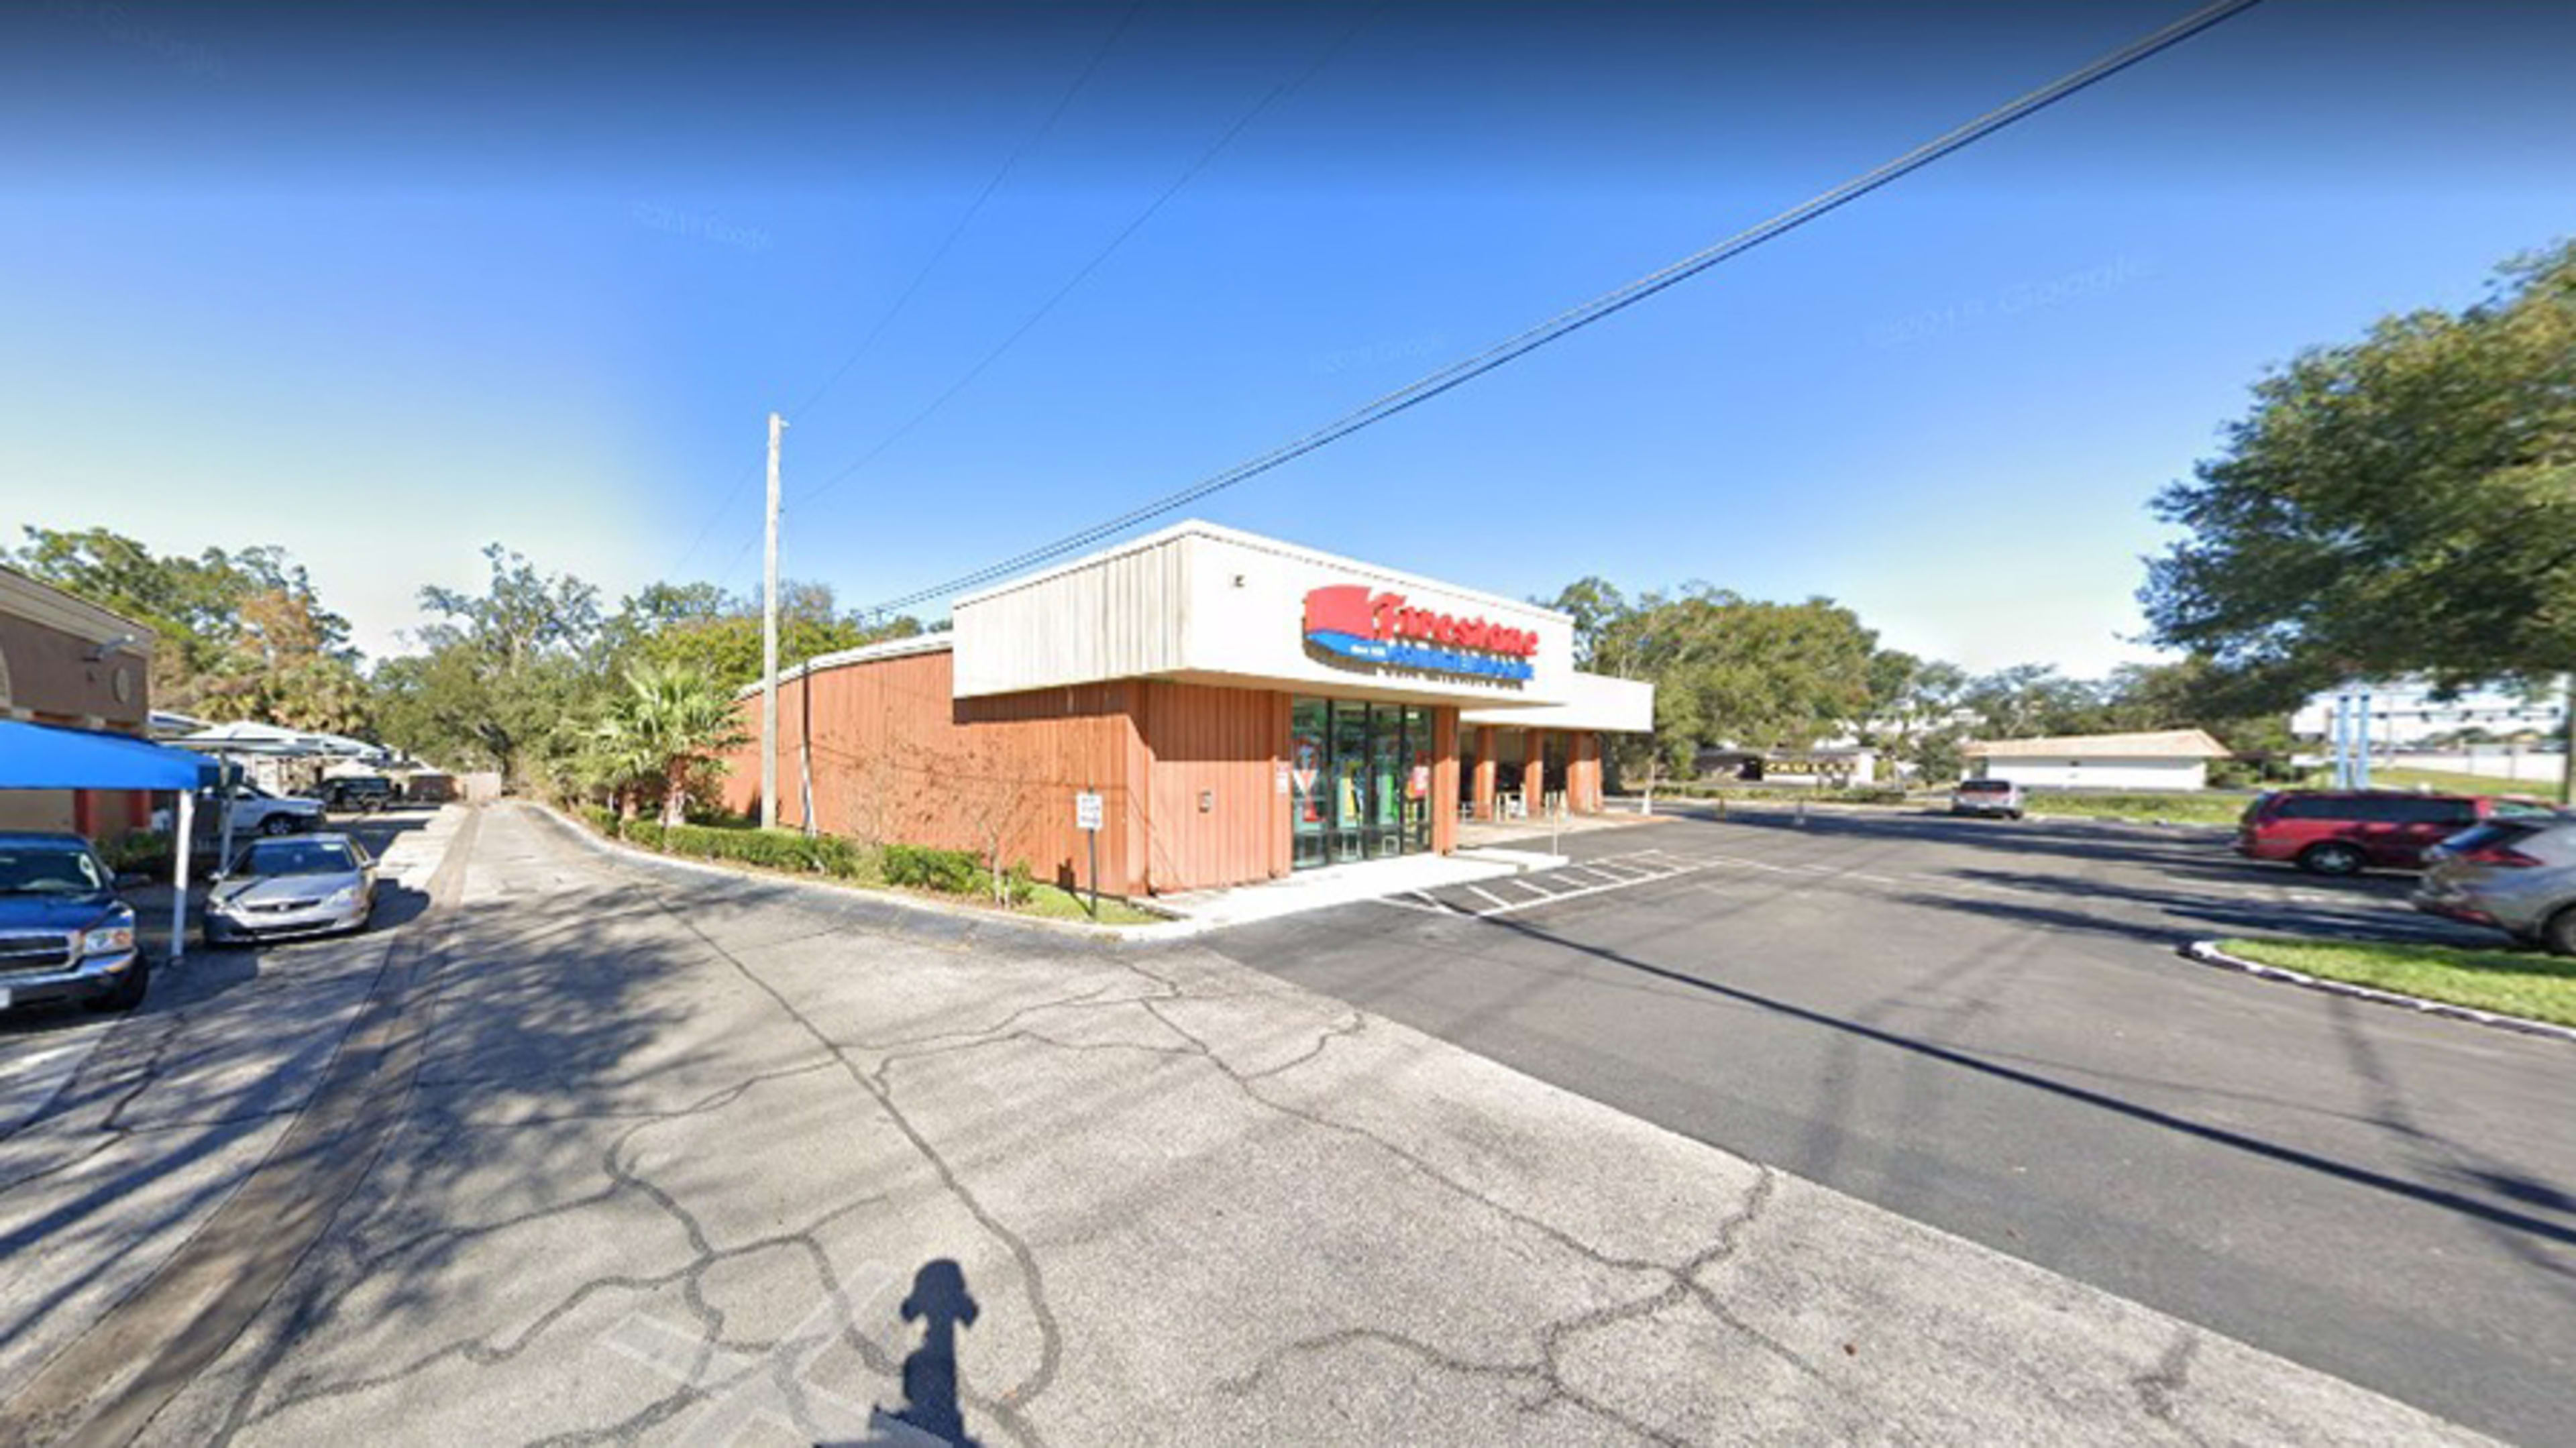 Firestone Complete Auto Care in Orlando, FL (854 Lee Rd): Tire Shop Near me  | SimpleTire